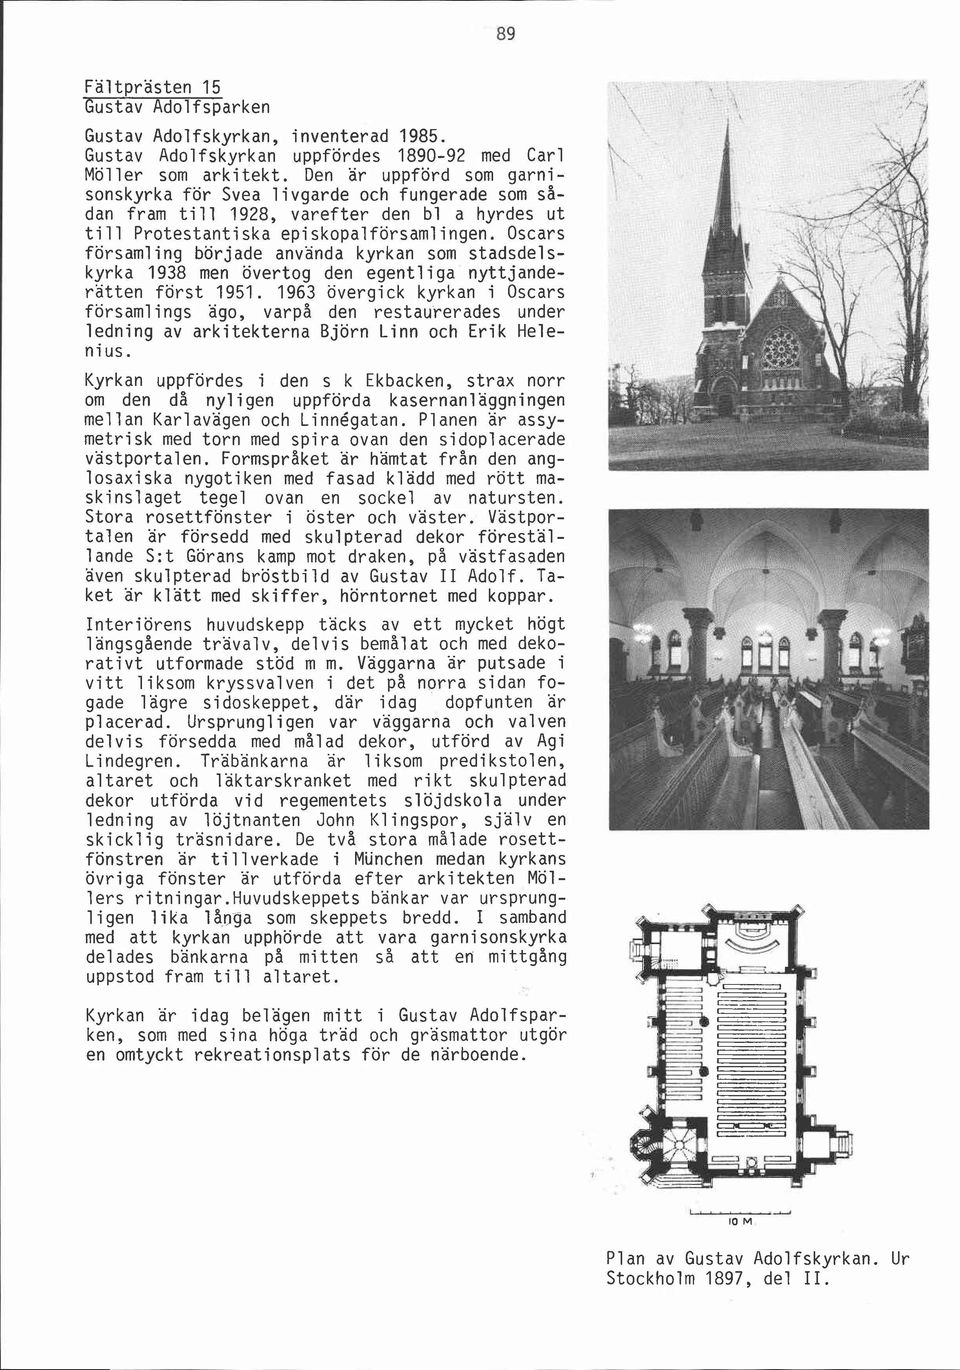 Oscars församling började använda kyrkan som stadsdelskyrka 1938 men övertog den egentliga nyttjanderätten först 1951.